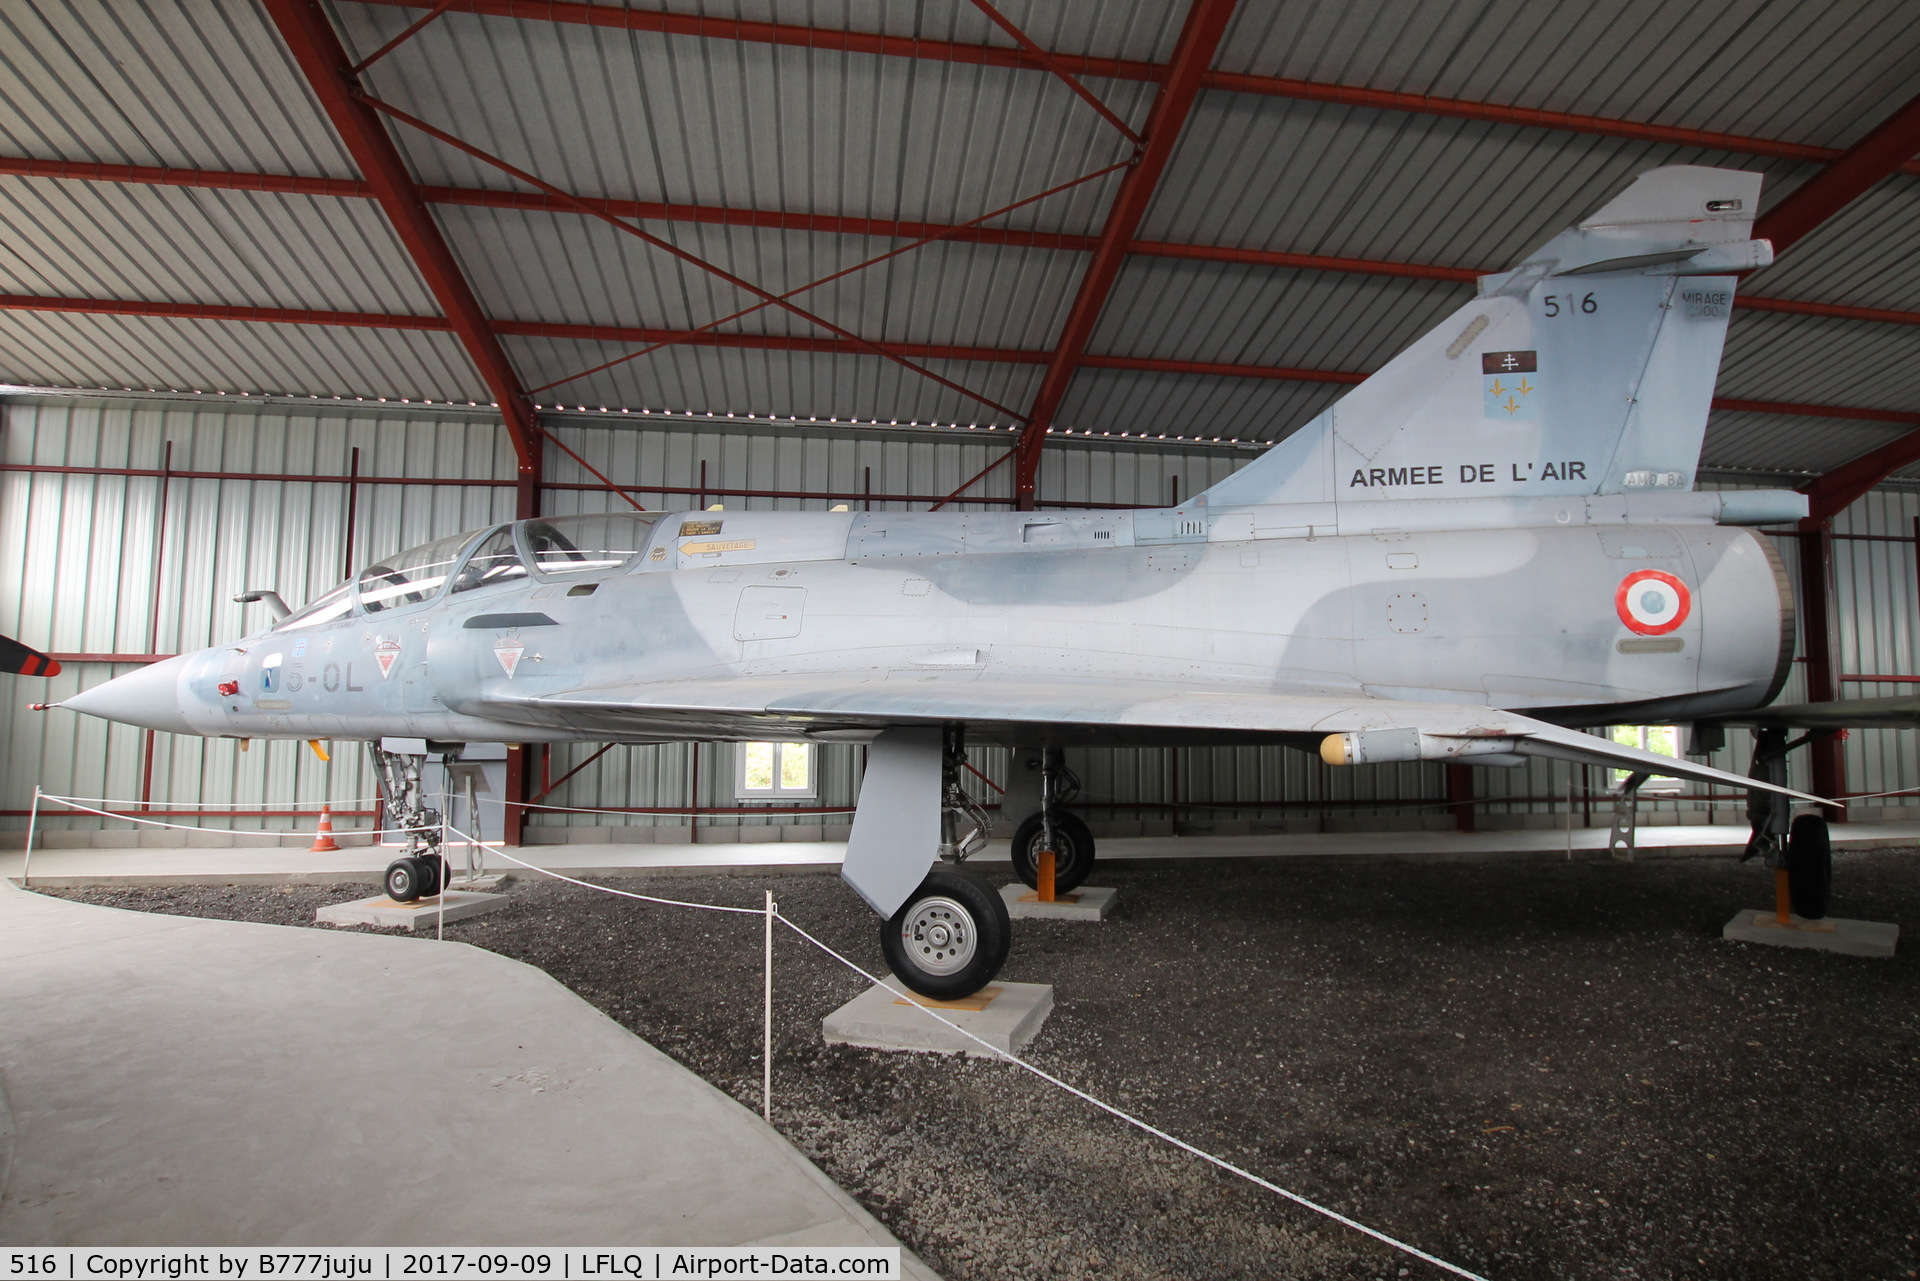 516, Dassault Mirage 2000B C/N 199, on display